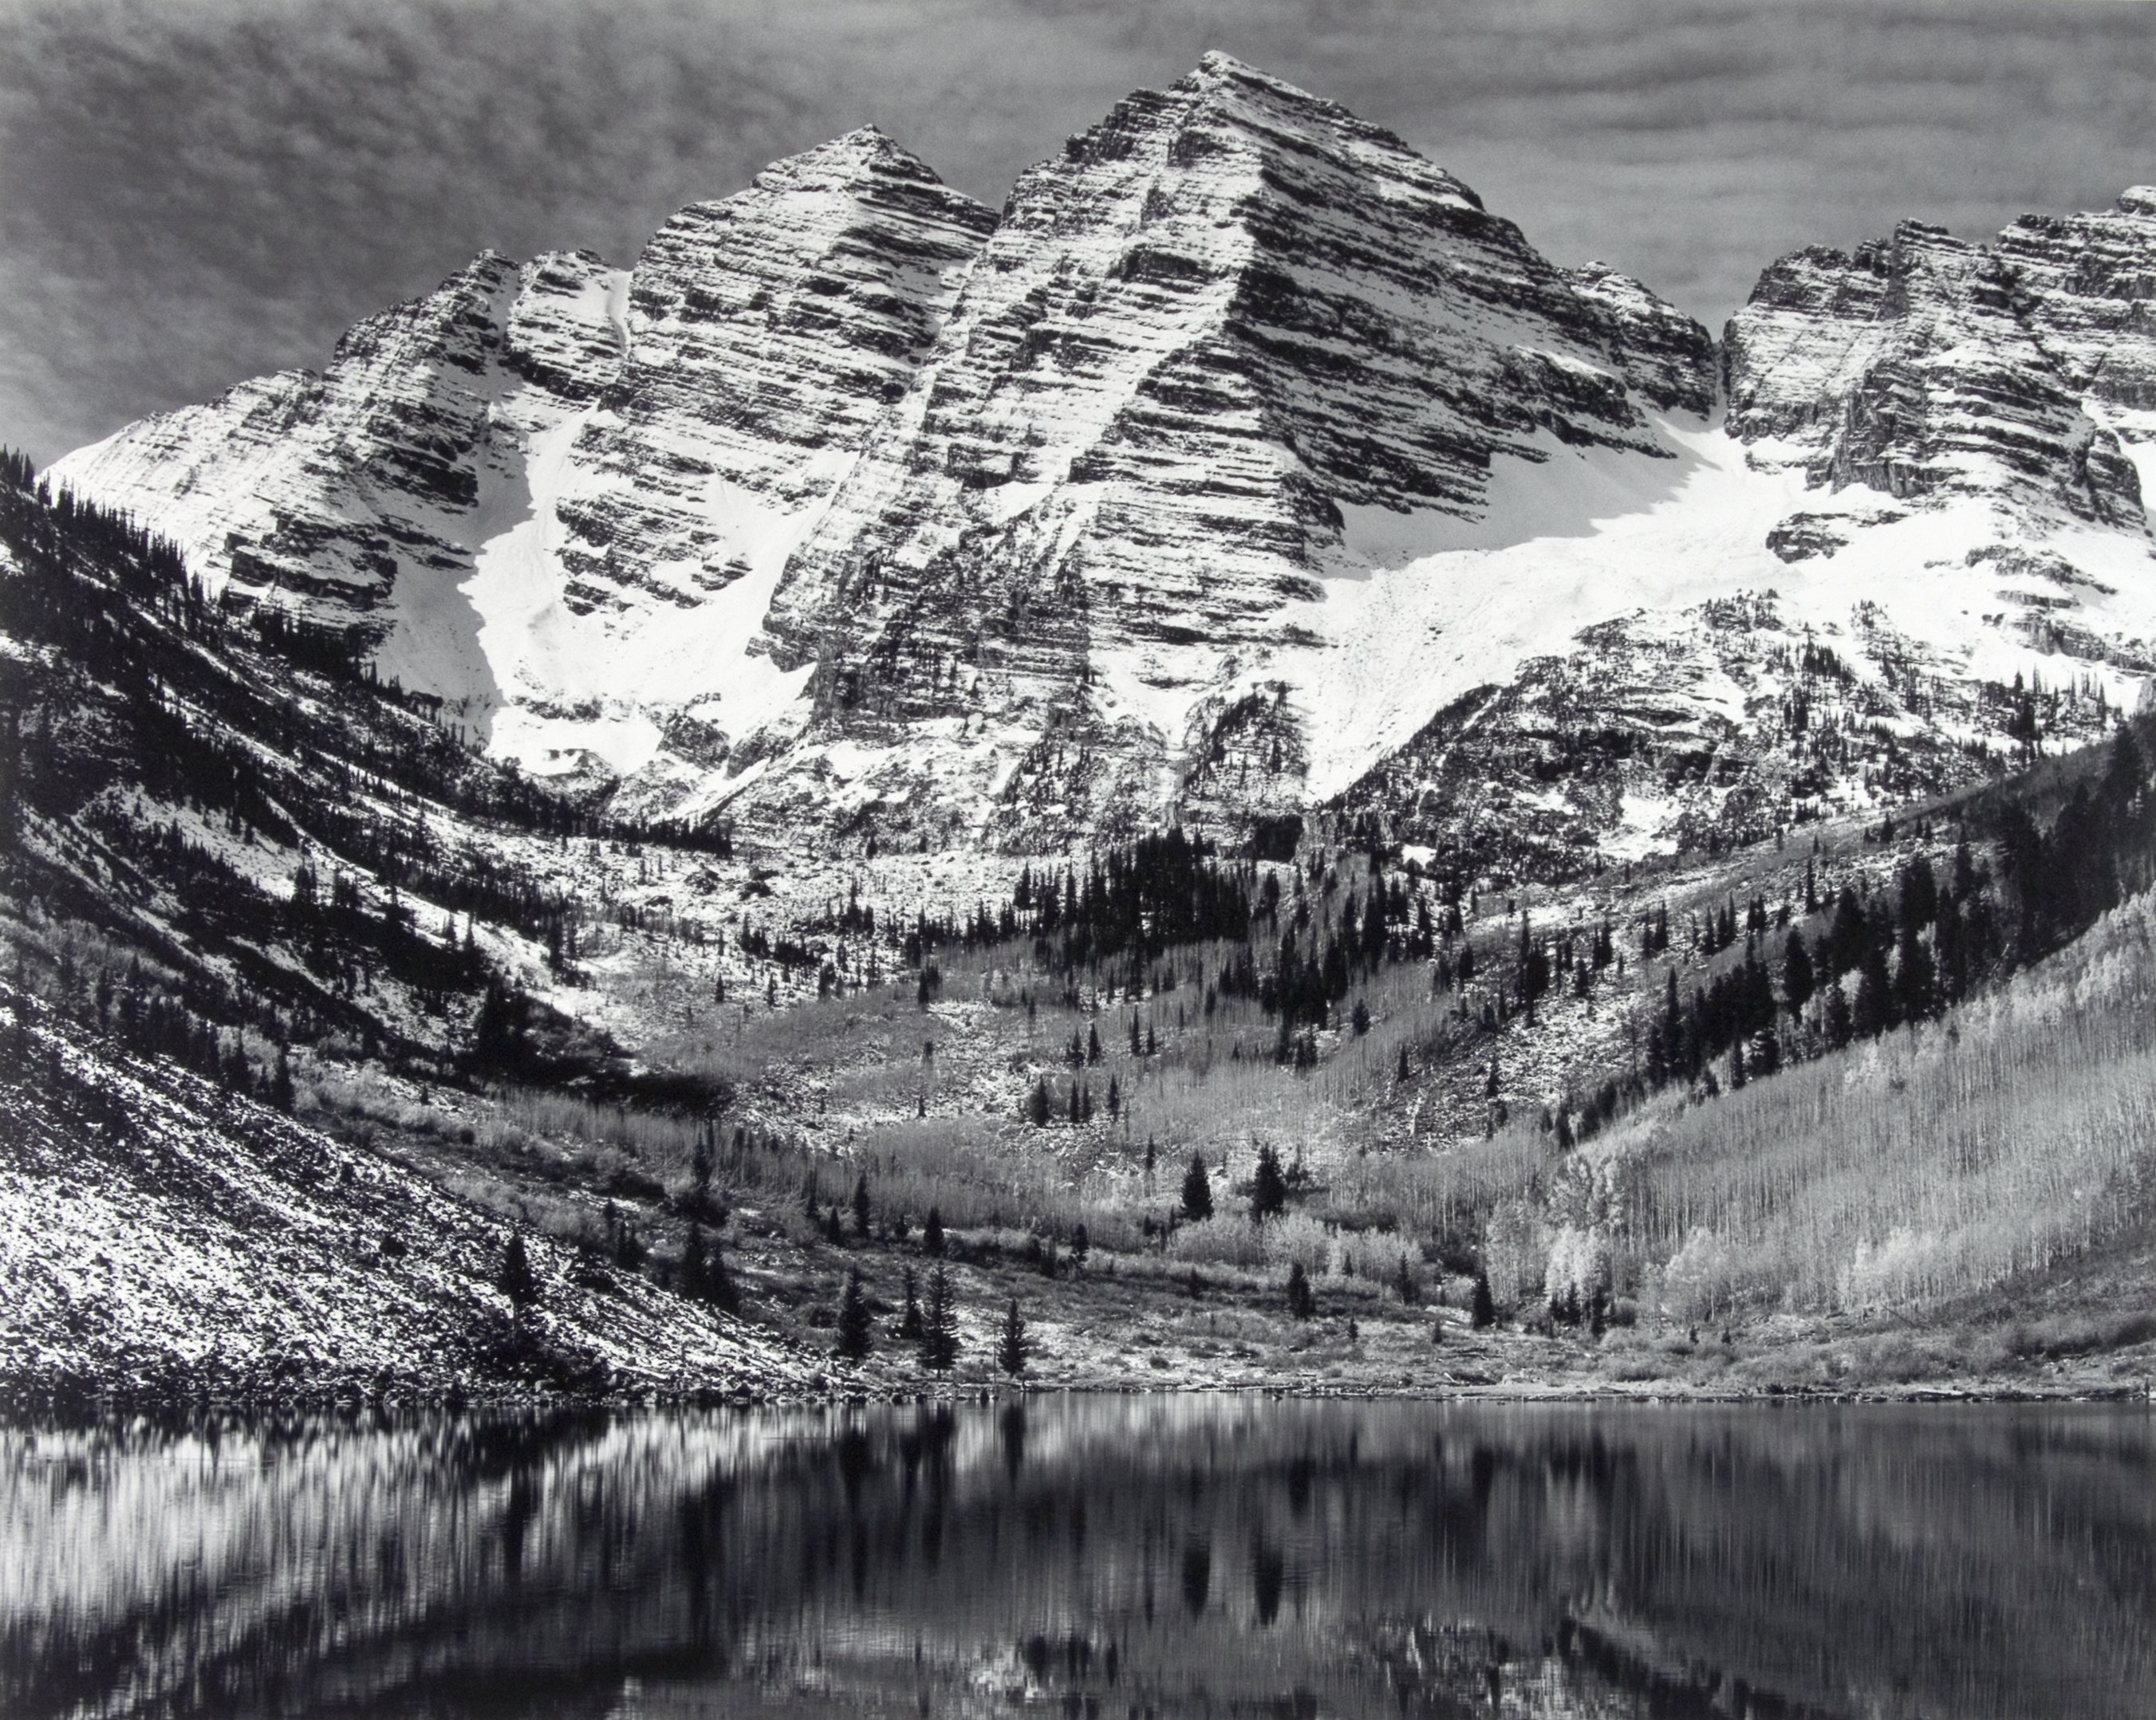 ansel adams fond d'écran,montagne,paysage naturel,l'eau,noir et blanc,chaîne de montagnes